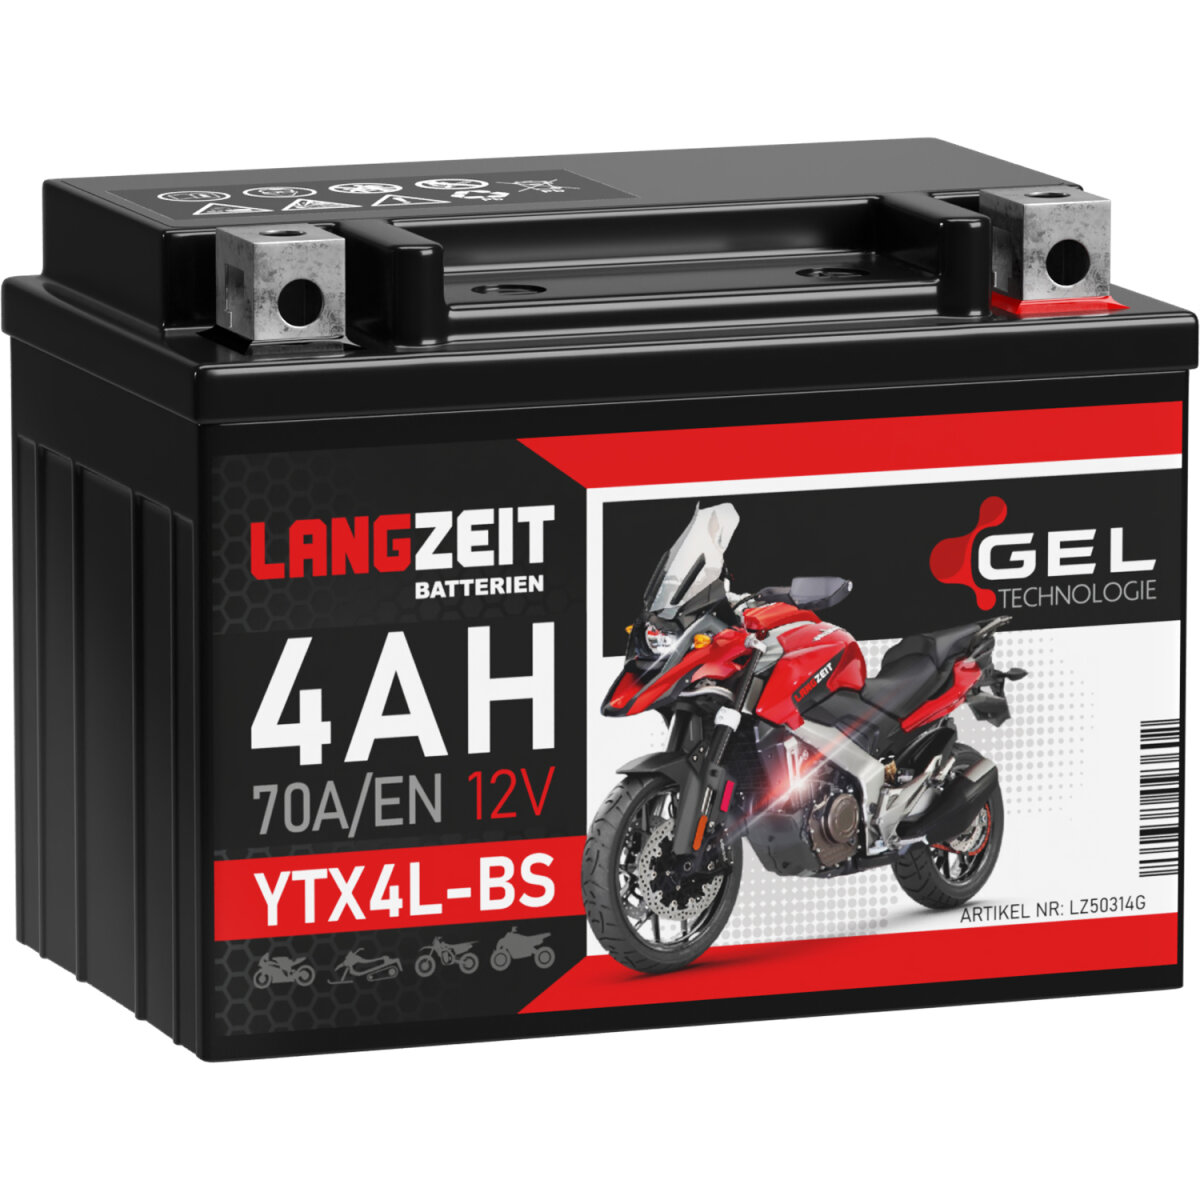 Langzeit Gel Motorradbatterie YTX4L-BS 4Ah 12V, 18,90 €